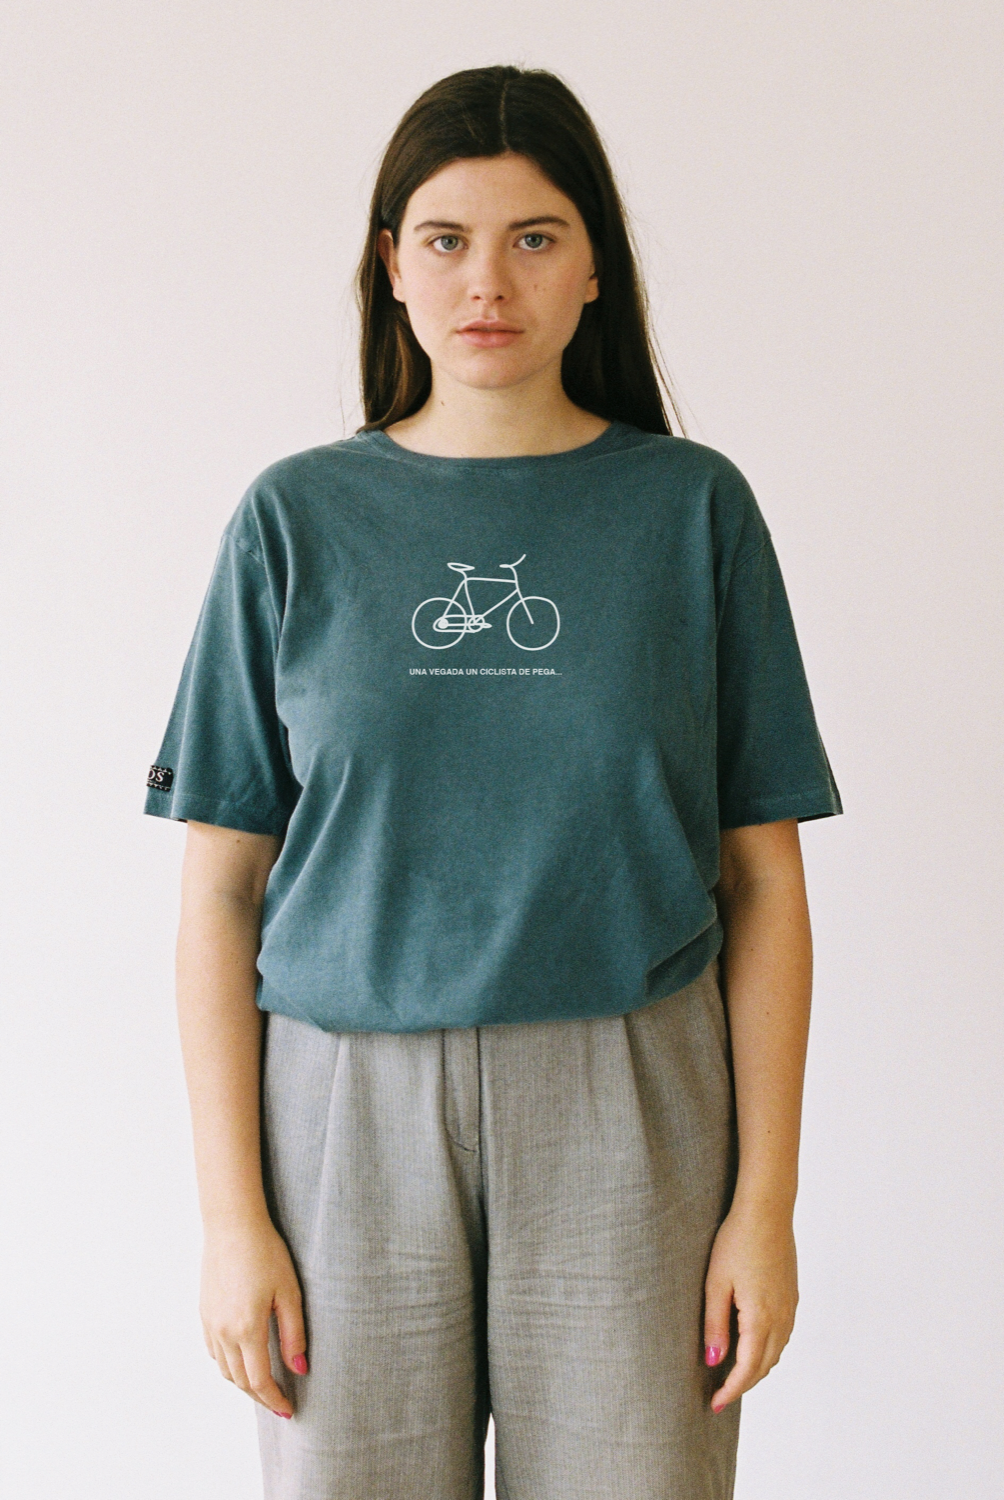 Pega Cyclist T-shirt